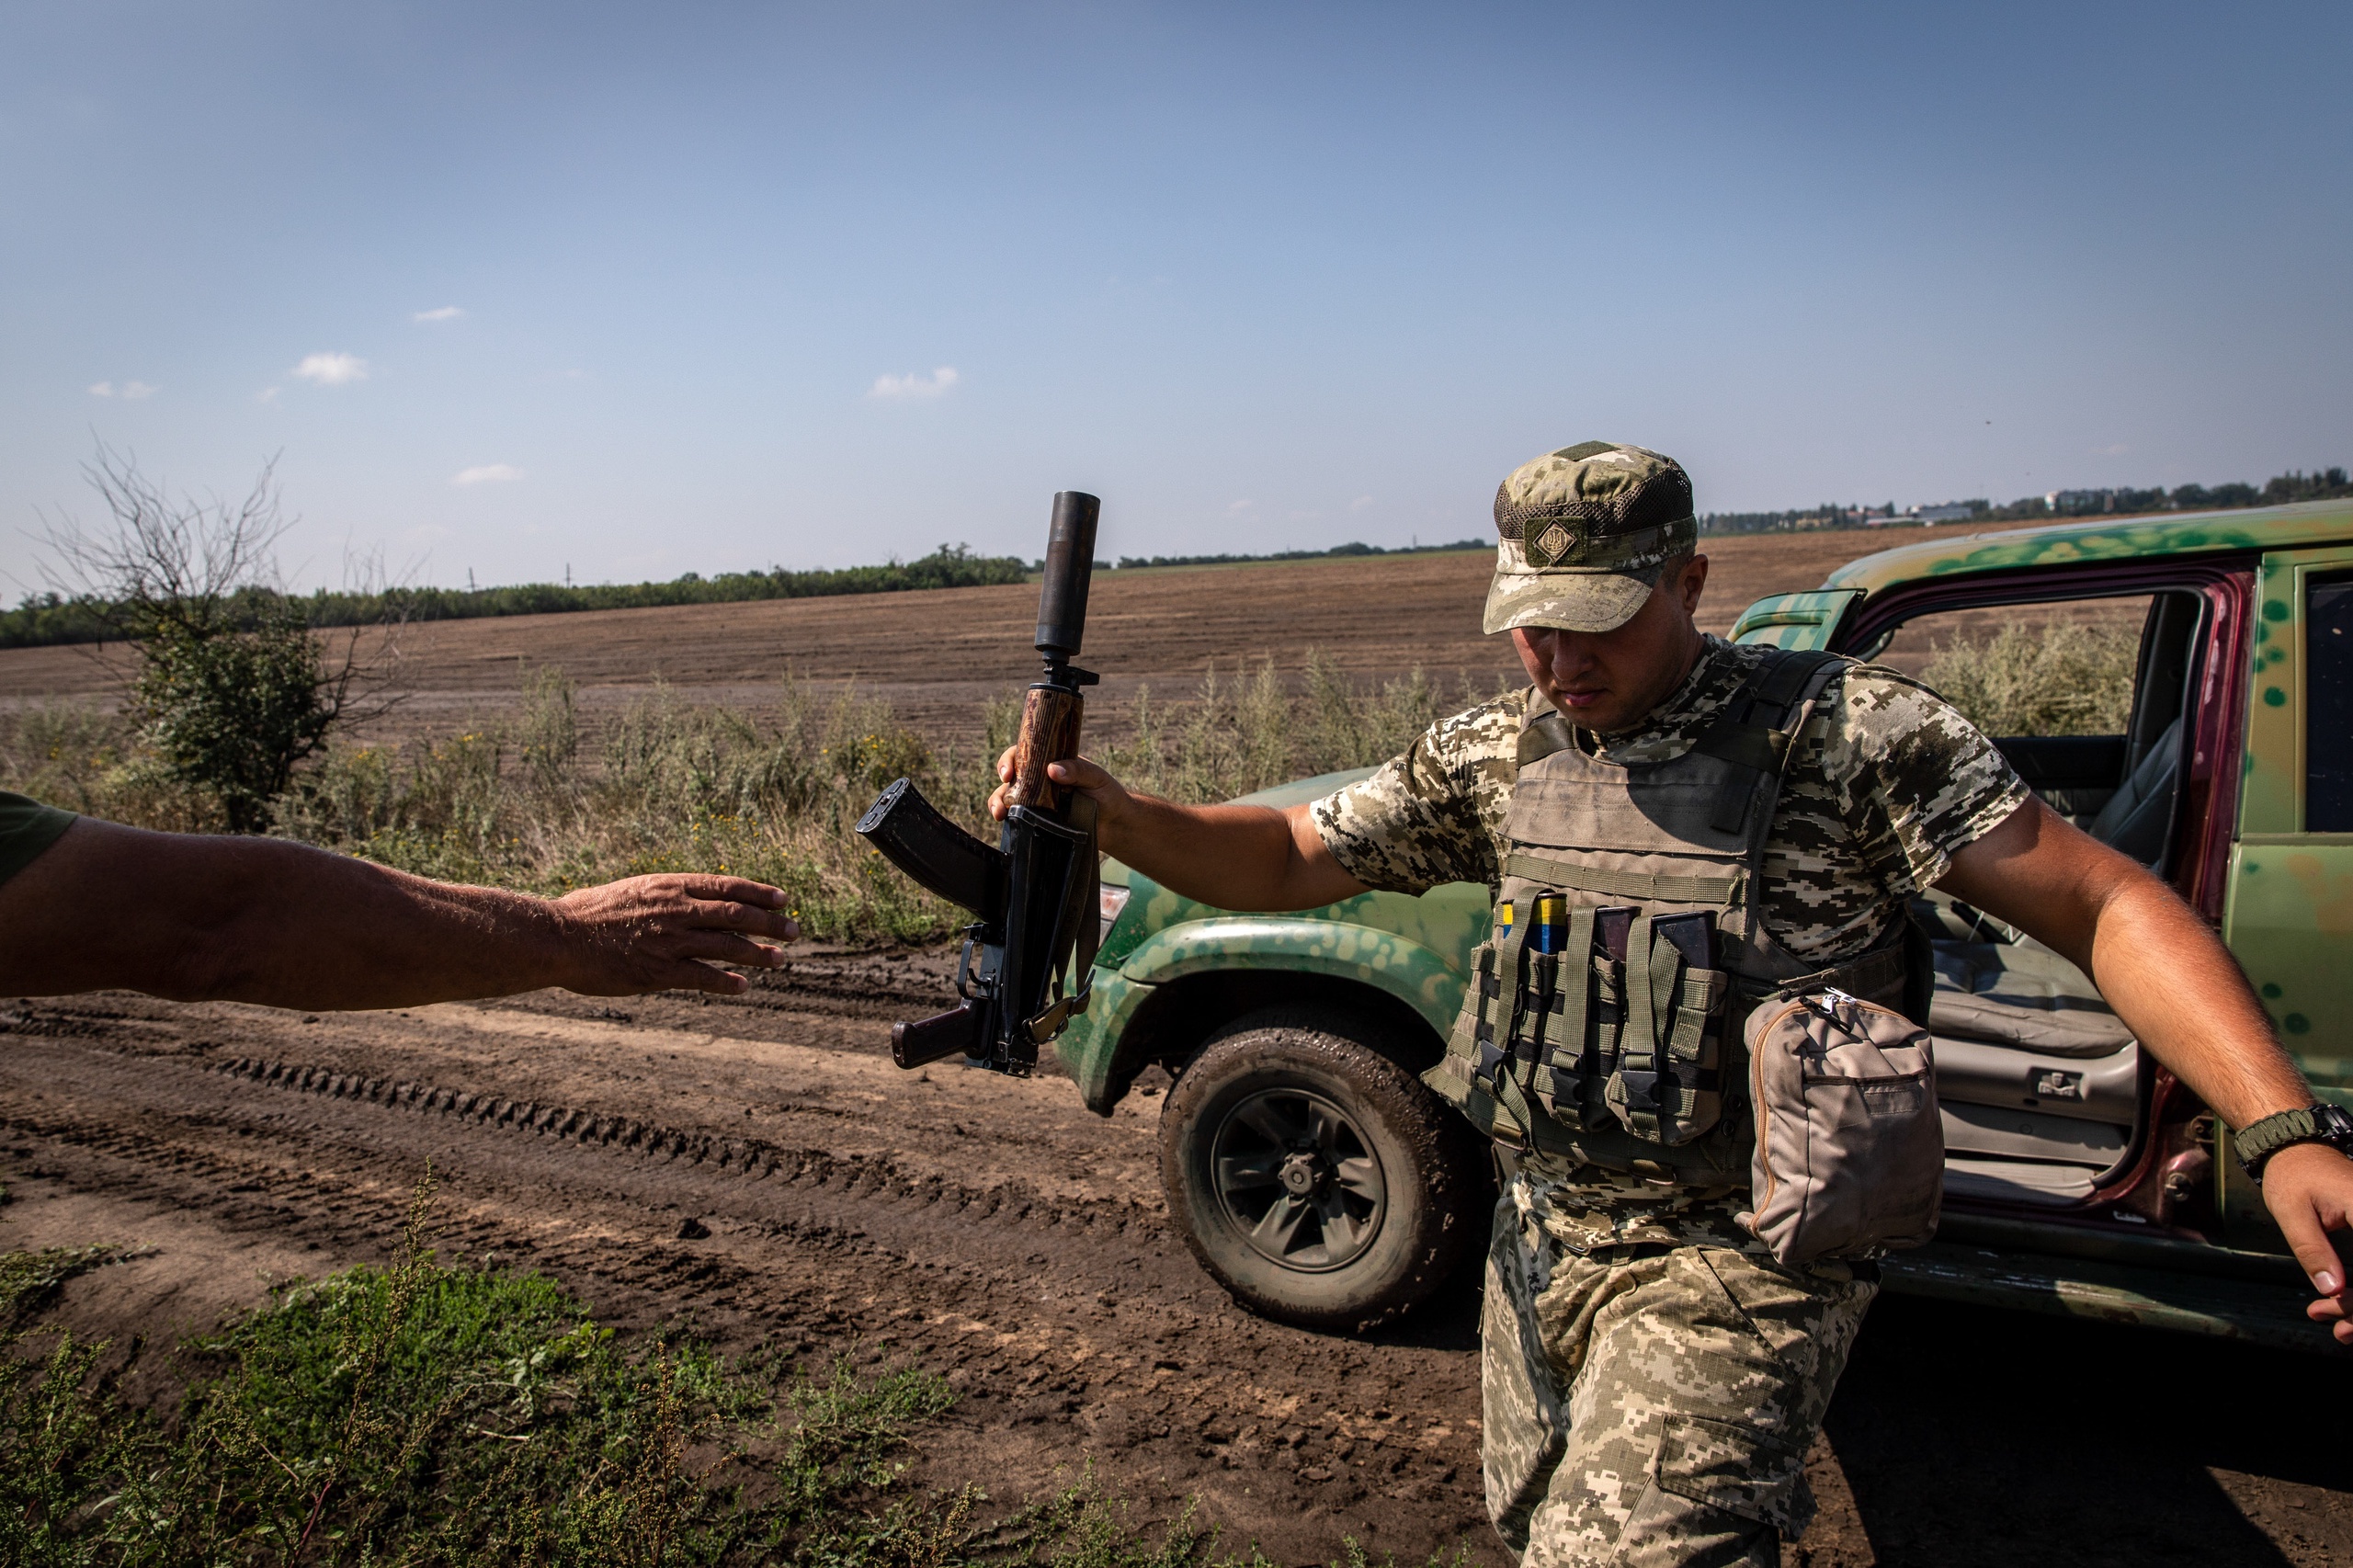 Het Russische ministerie van Defensie erkent dat de Oekraïense troepen overmacht hebben in de Oekraïense regio Cherson, wat grotendeels in handen is van Rusland. Toch weet Rusland 'positie te houden ondanks de overmacht van de vijandige troepen', zoals het ministerie stelt. 